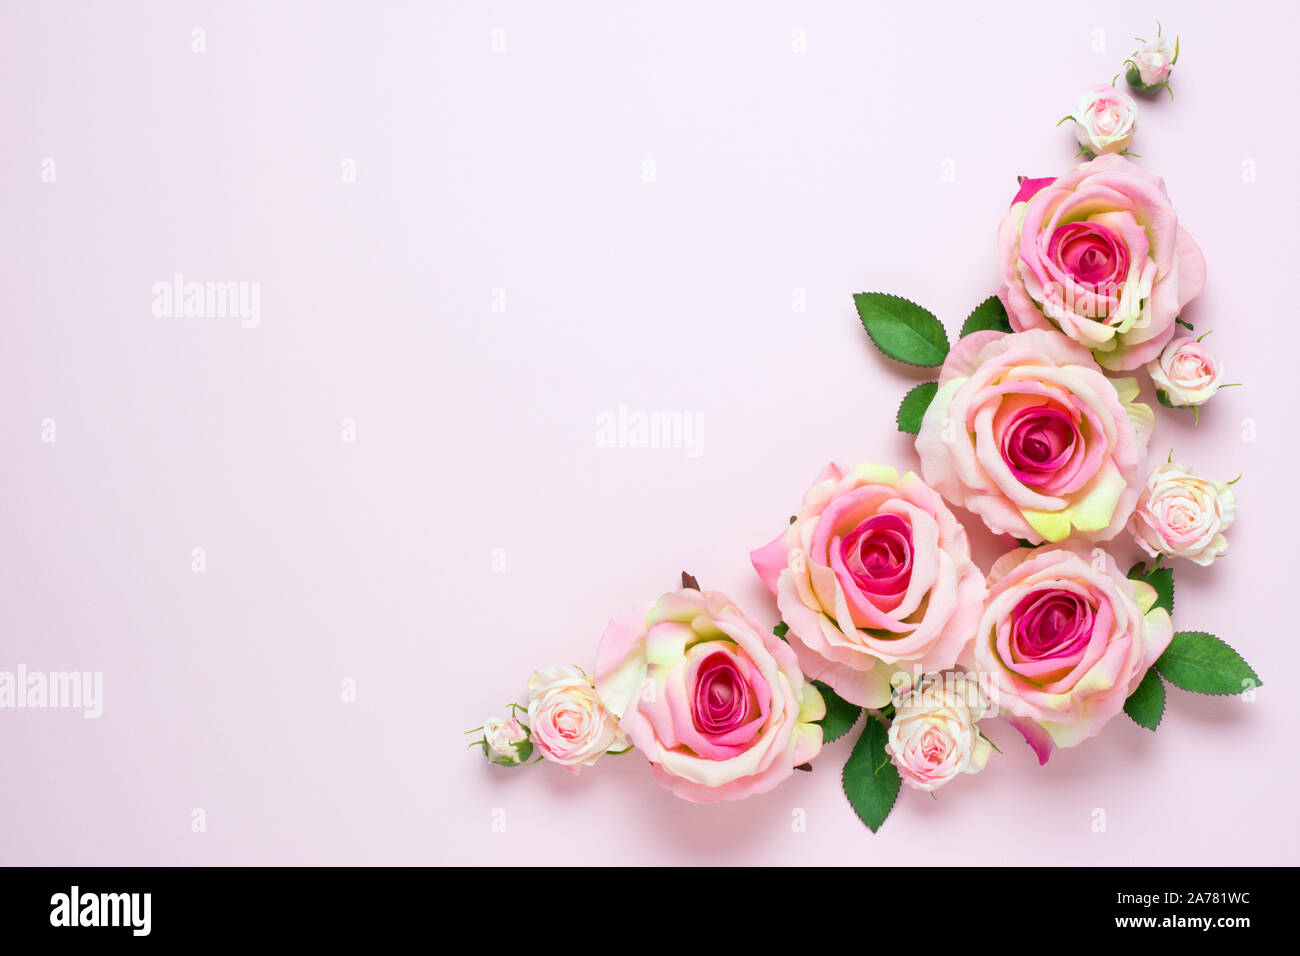 Cùng điểm lại những chi tiết nhỏ nhặt trên từng cánh hoa hồng màu hồng tươi sáng này. Hãy tận hưởng vẻ đẹp tuyệt vời của hình ảnh và cảm nhận được sự duyên dáng và quyến rũ của những bông hoa này.